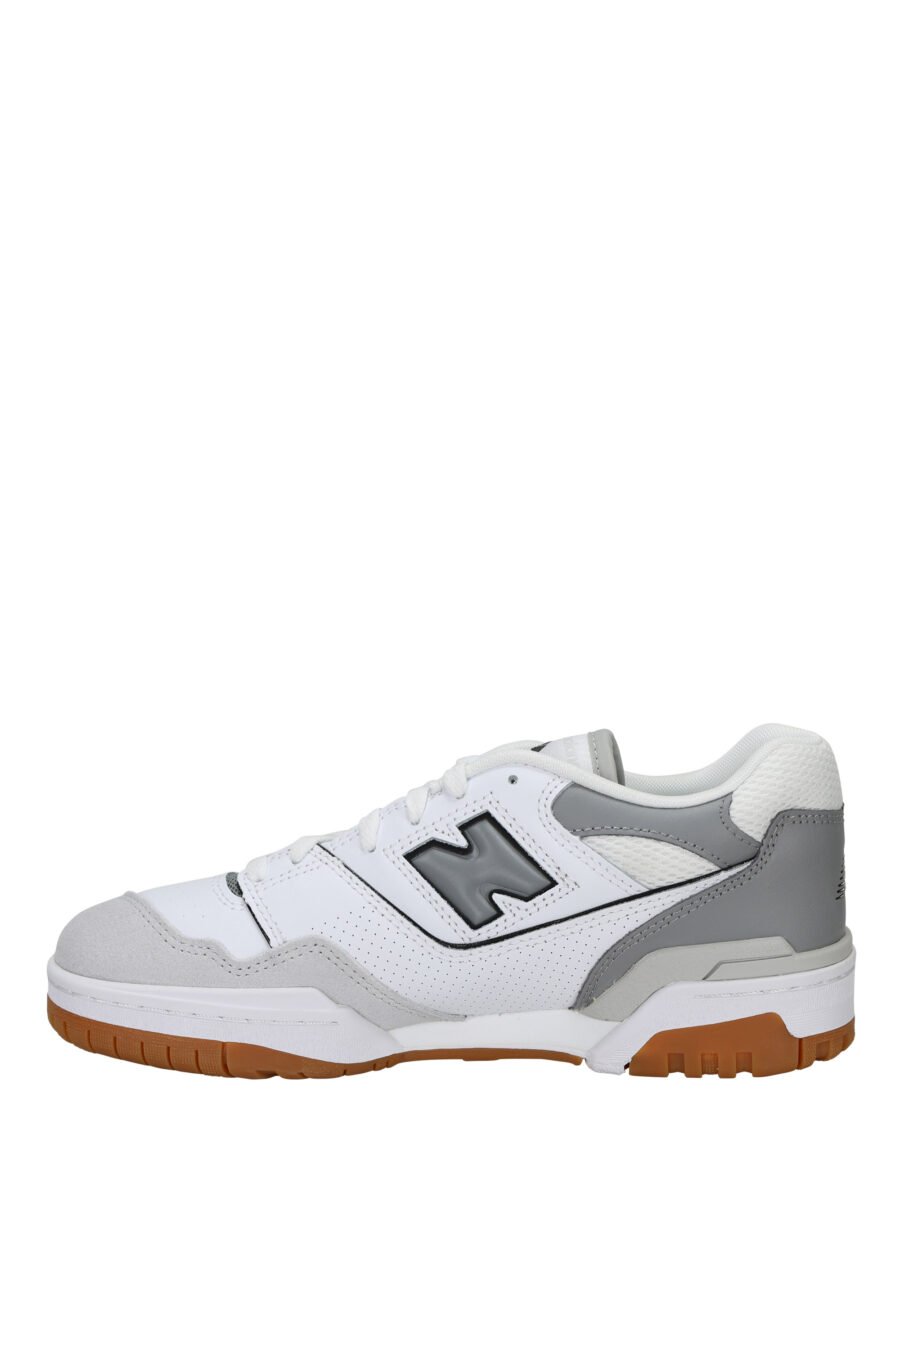 Zapatillas blancas con gris y suela marrón "550" con logo "N" gris - 197375689111 2